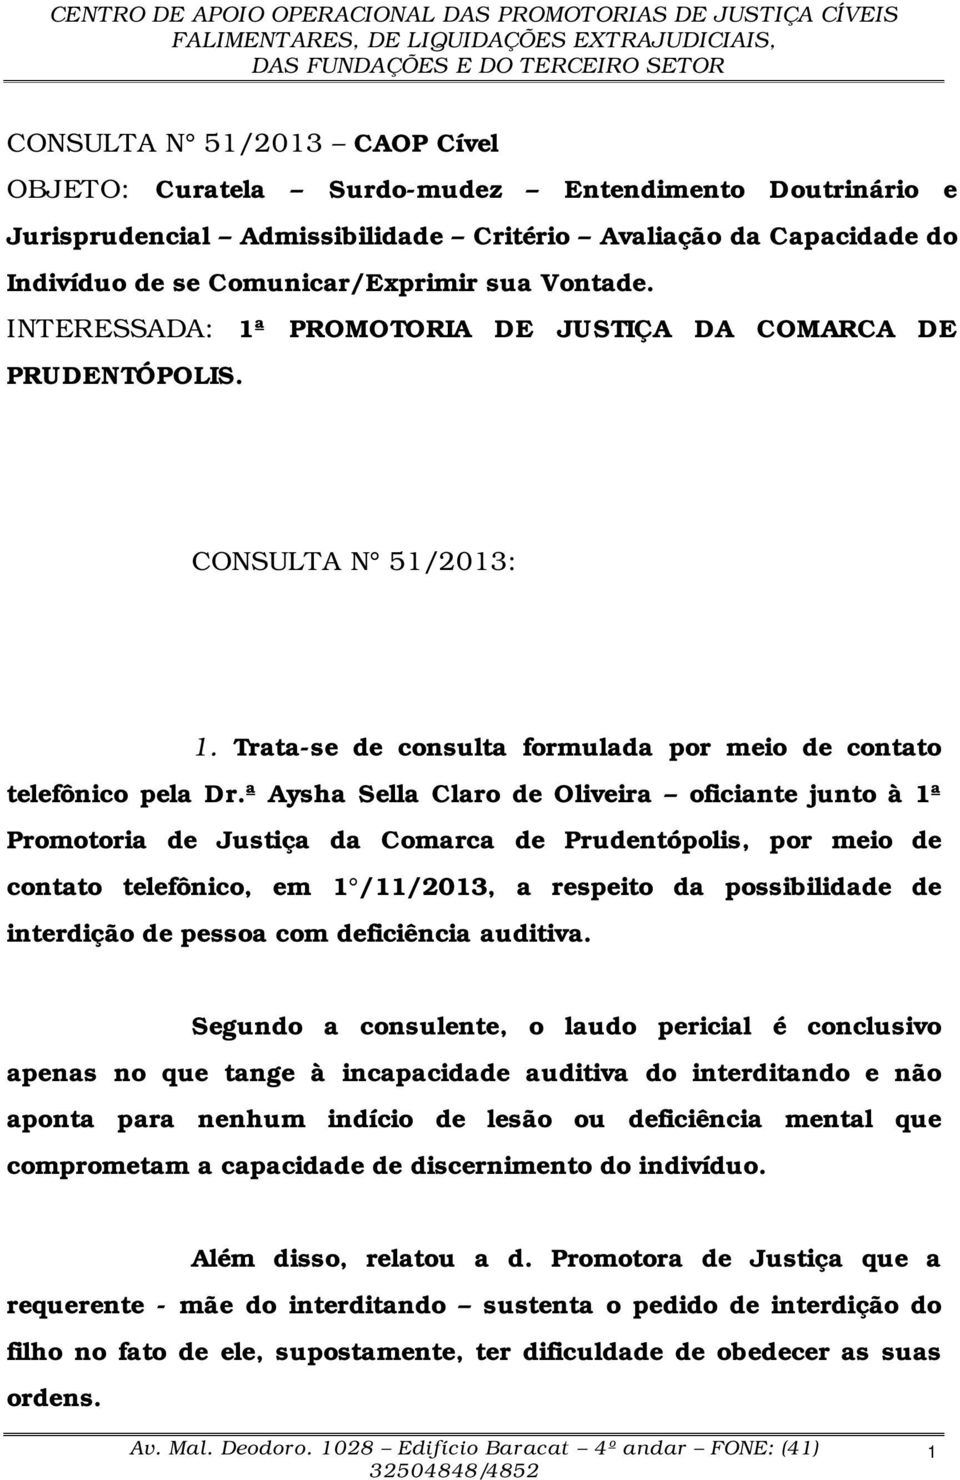 ª Aysha Sella Claro de Oliveira oficiante junto à 1ª Promotoria de Justiça da Comarca de Prudentópolis, por meio de contato telefônico, em 1 /11/2013, a respeito da possibilidade de interdição de